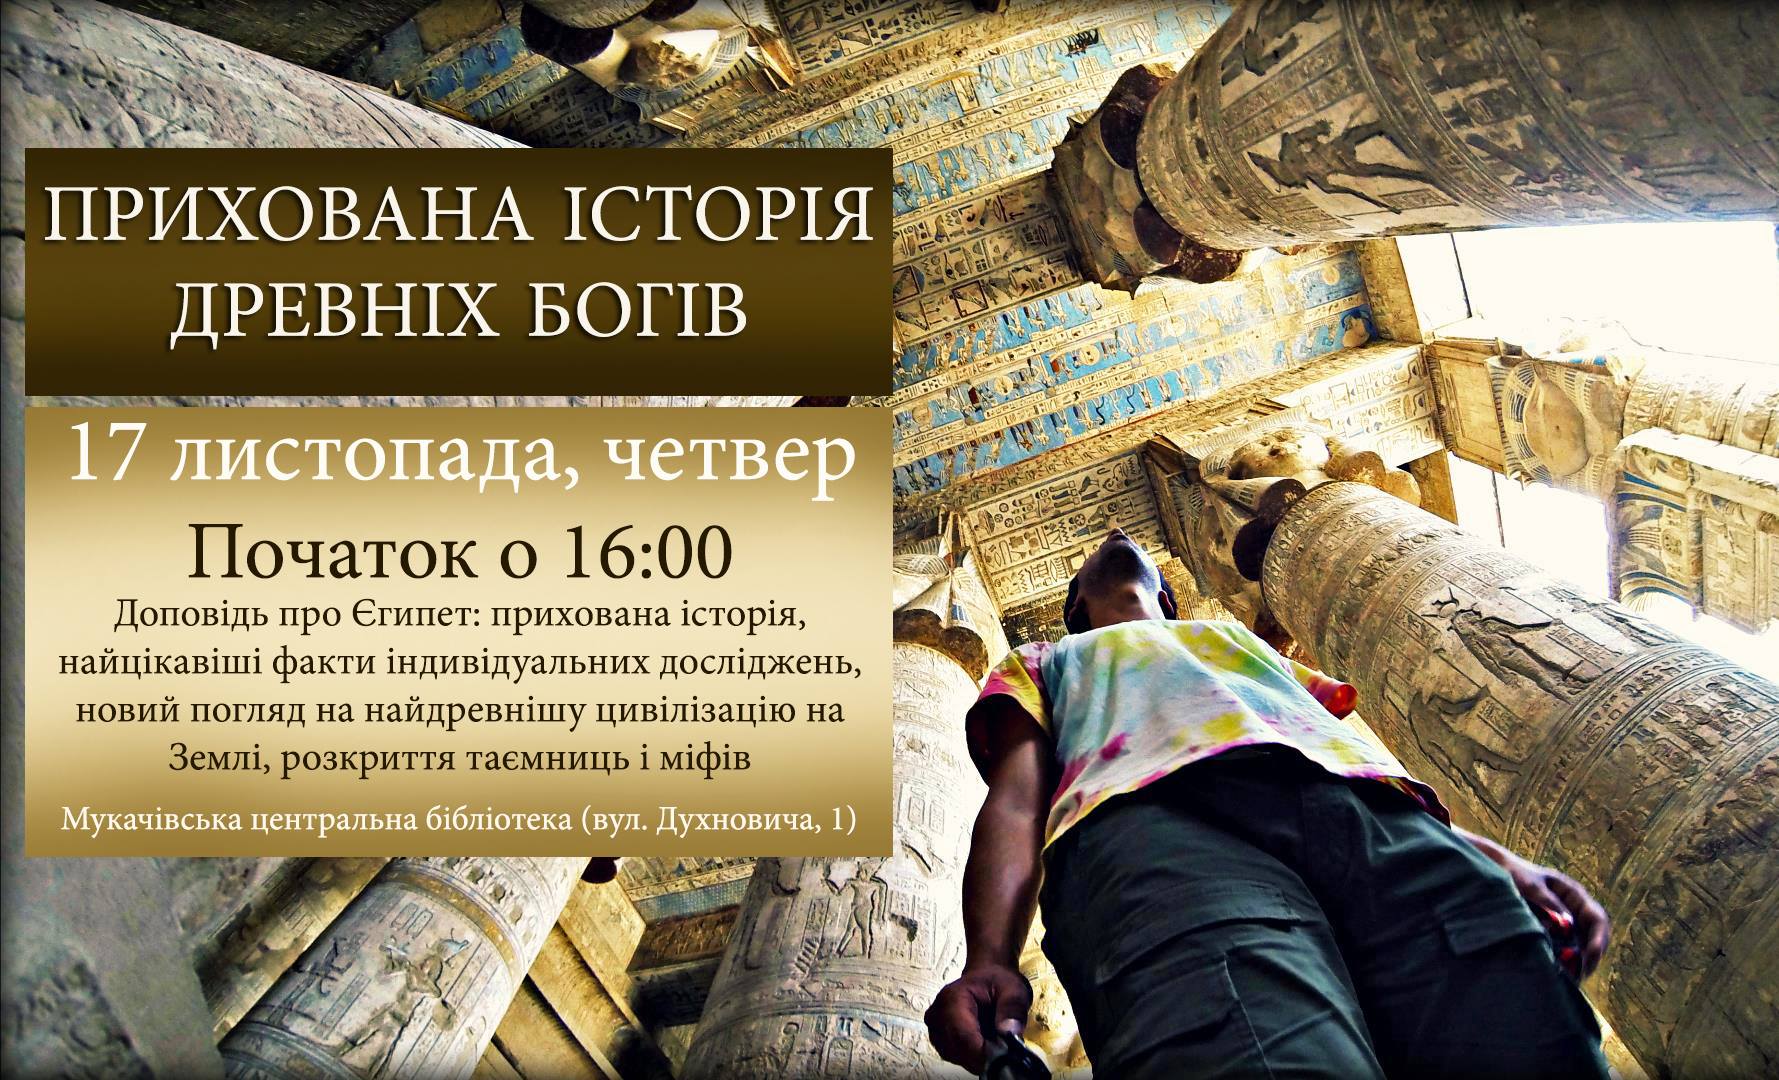 В четверг, 17 ноября, в Мукачево расскажут скрытую историю древних богов.
